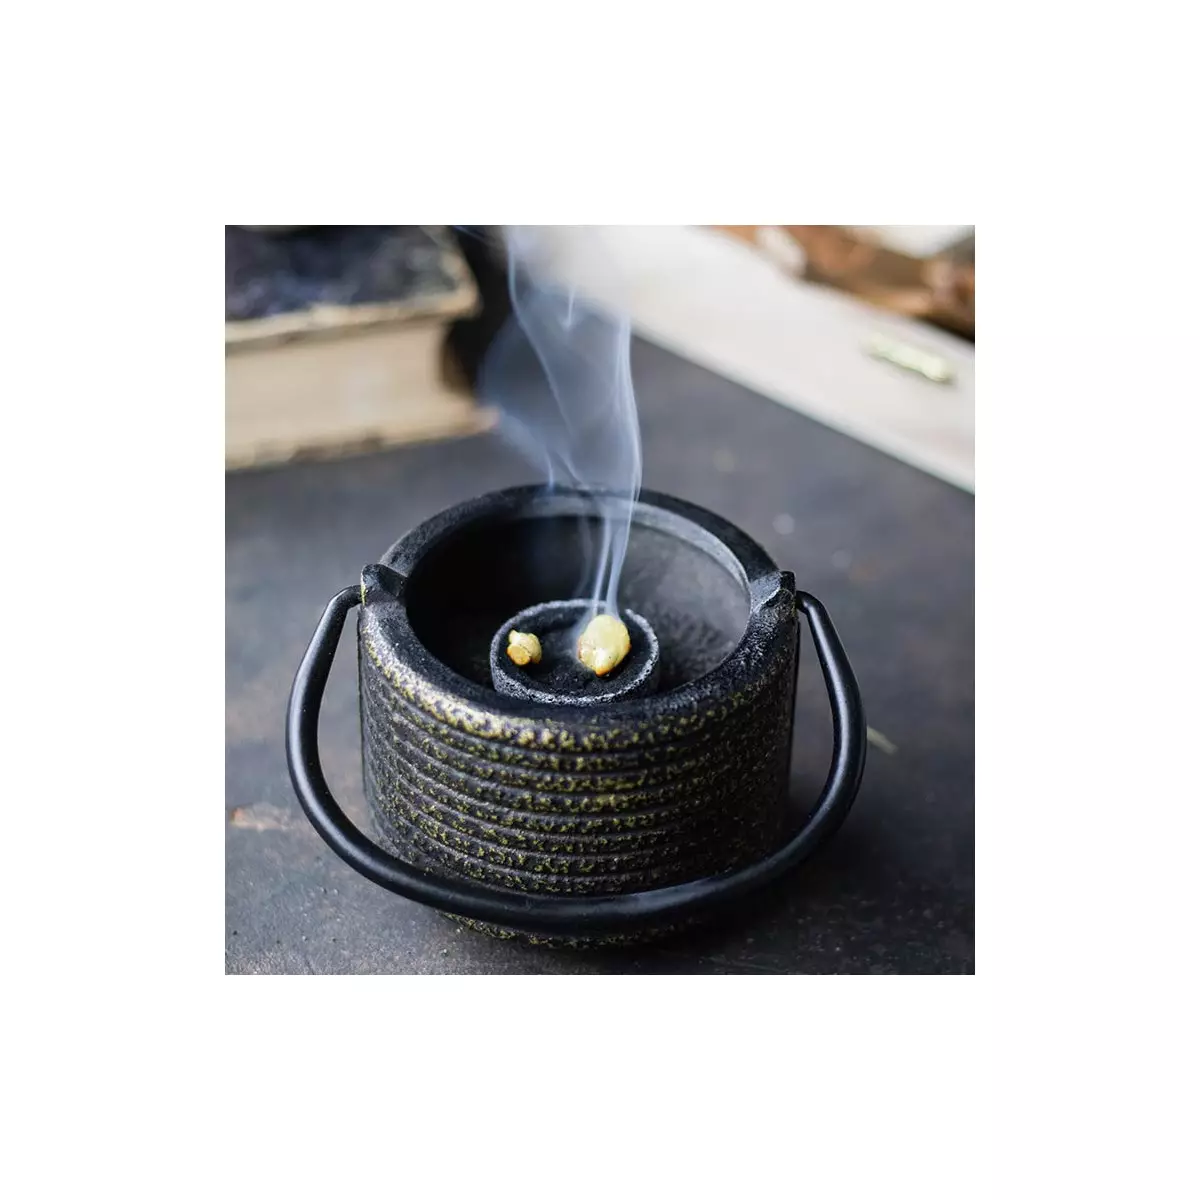 Kifinomult japán ízésvilágot tükröző öntöttvas füstölőedény fekete-bronz színben, mely többféle módon is használható.